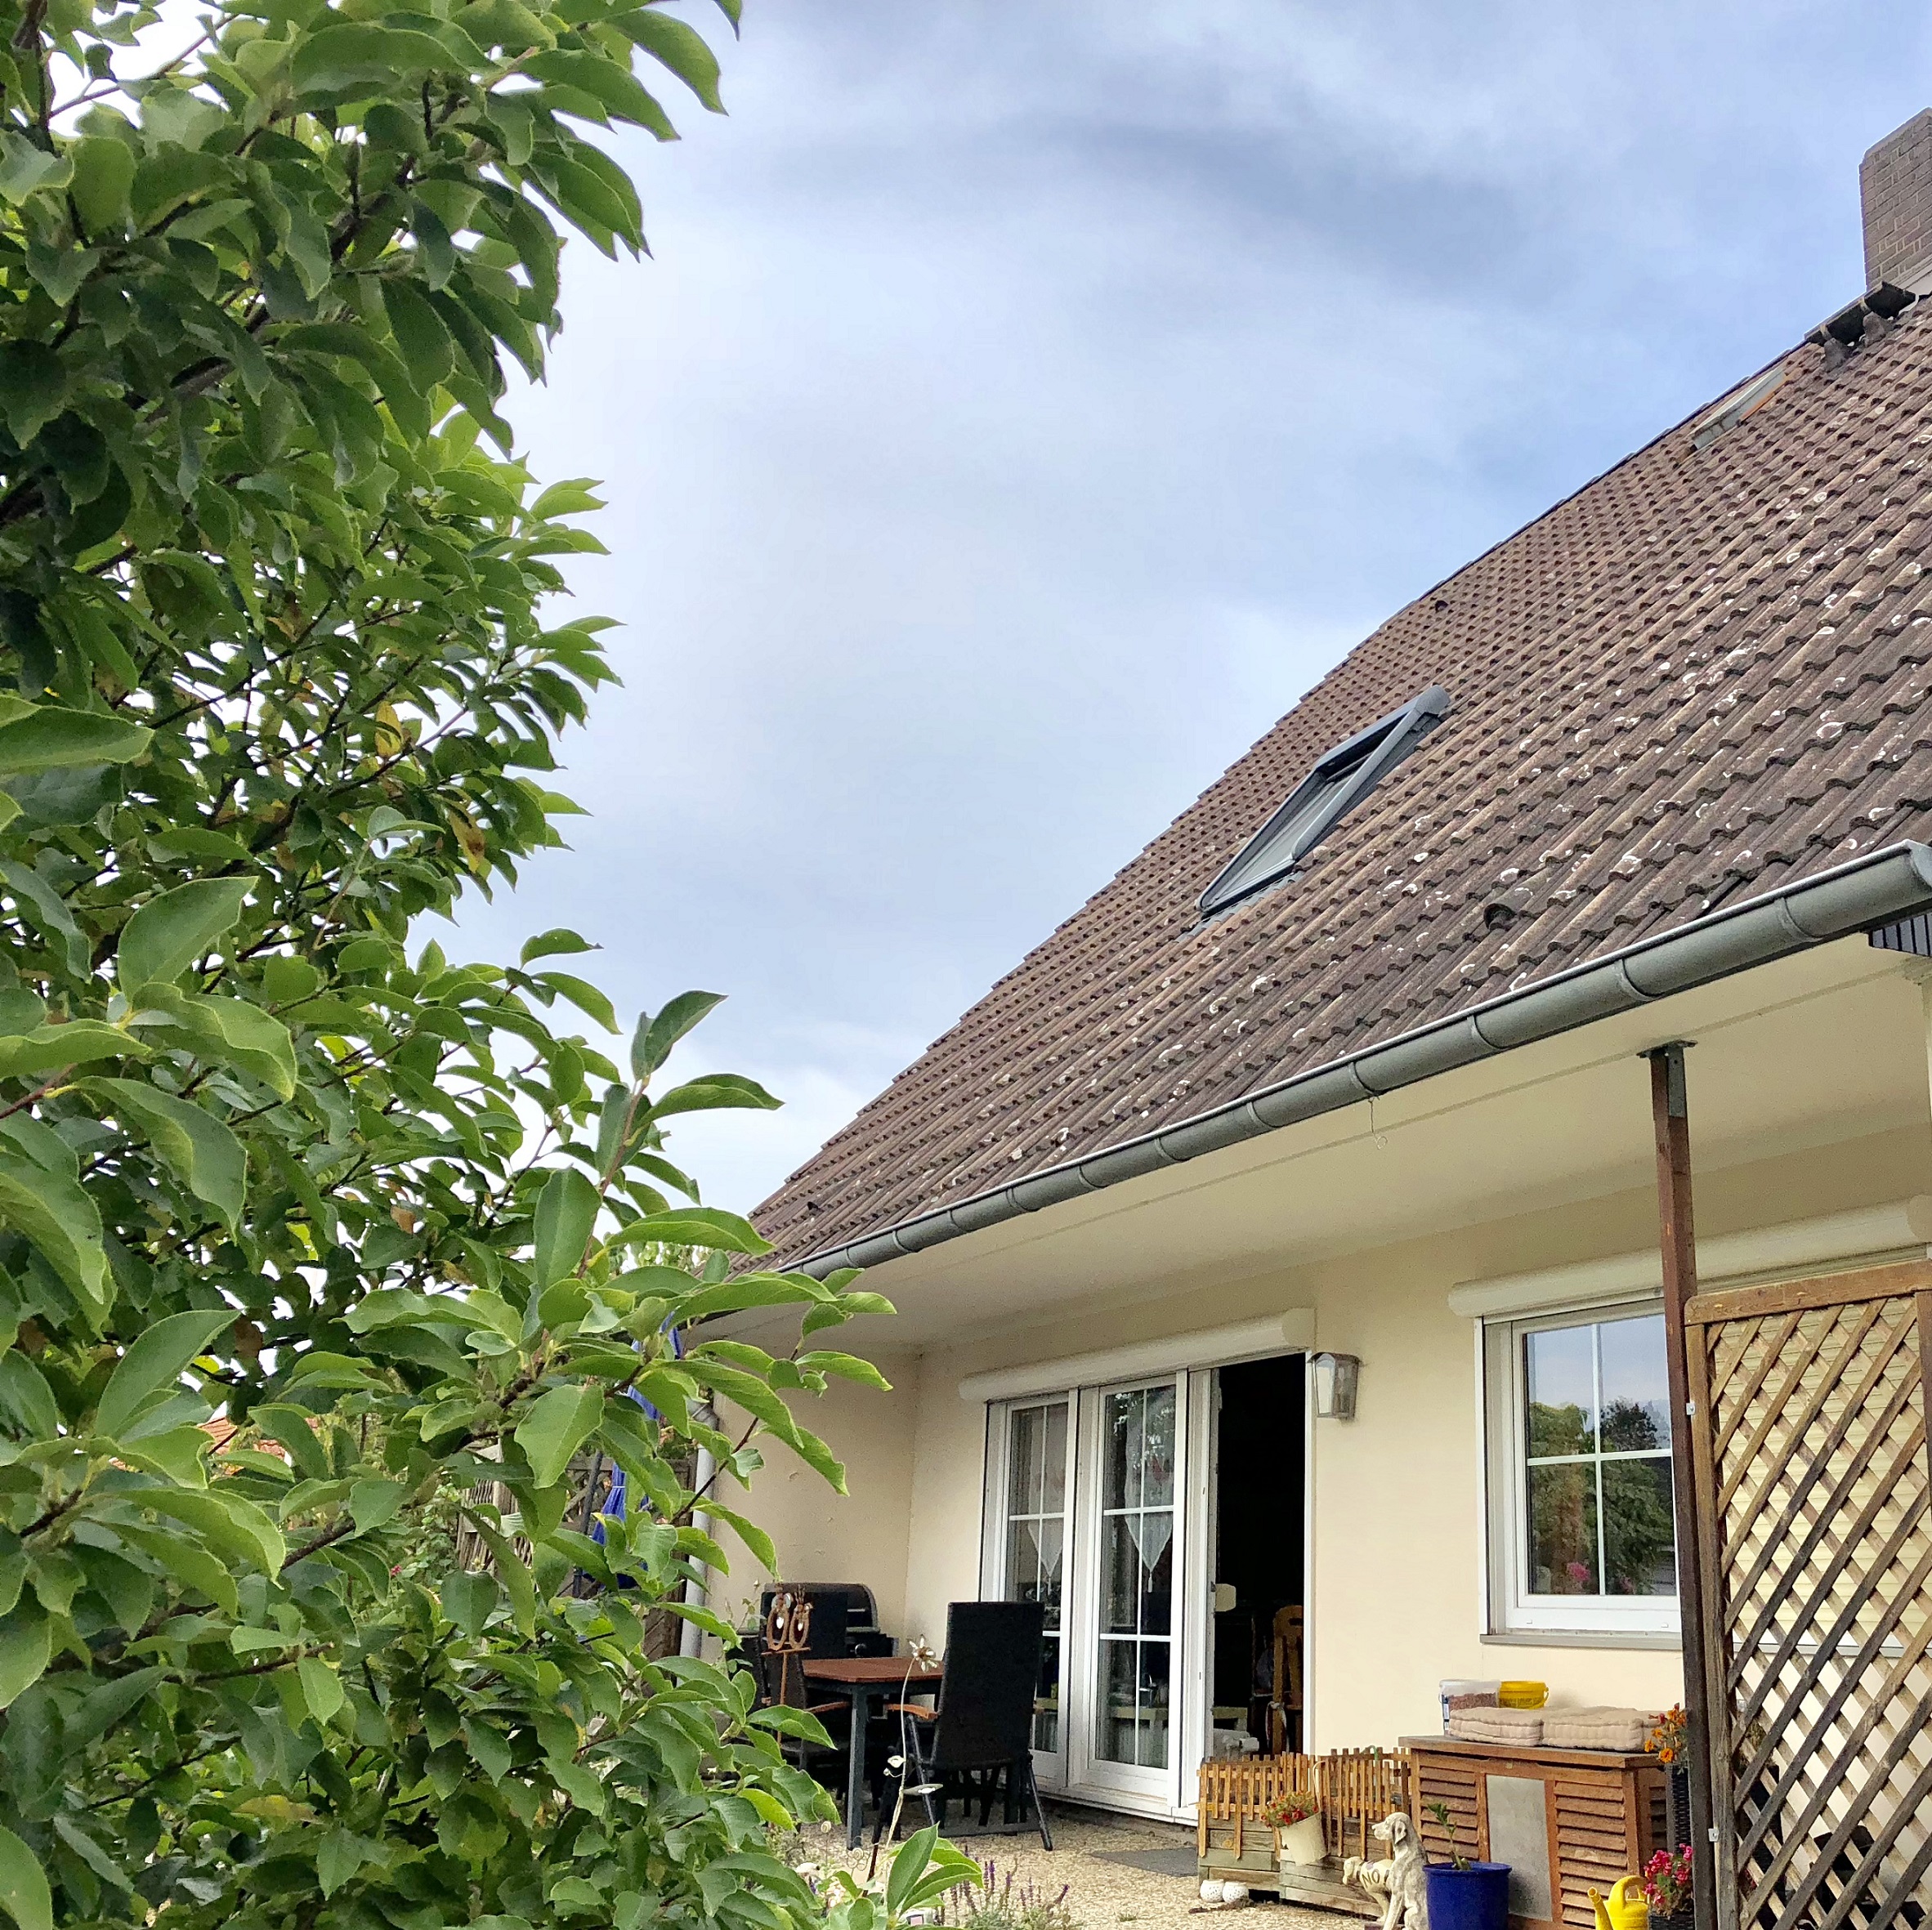 verkauft: Freistehendes Einfamilienhaus mit Garage, Südgarten, 2 Bädern, Vollkeller u.v.m.